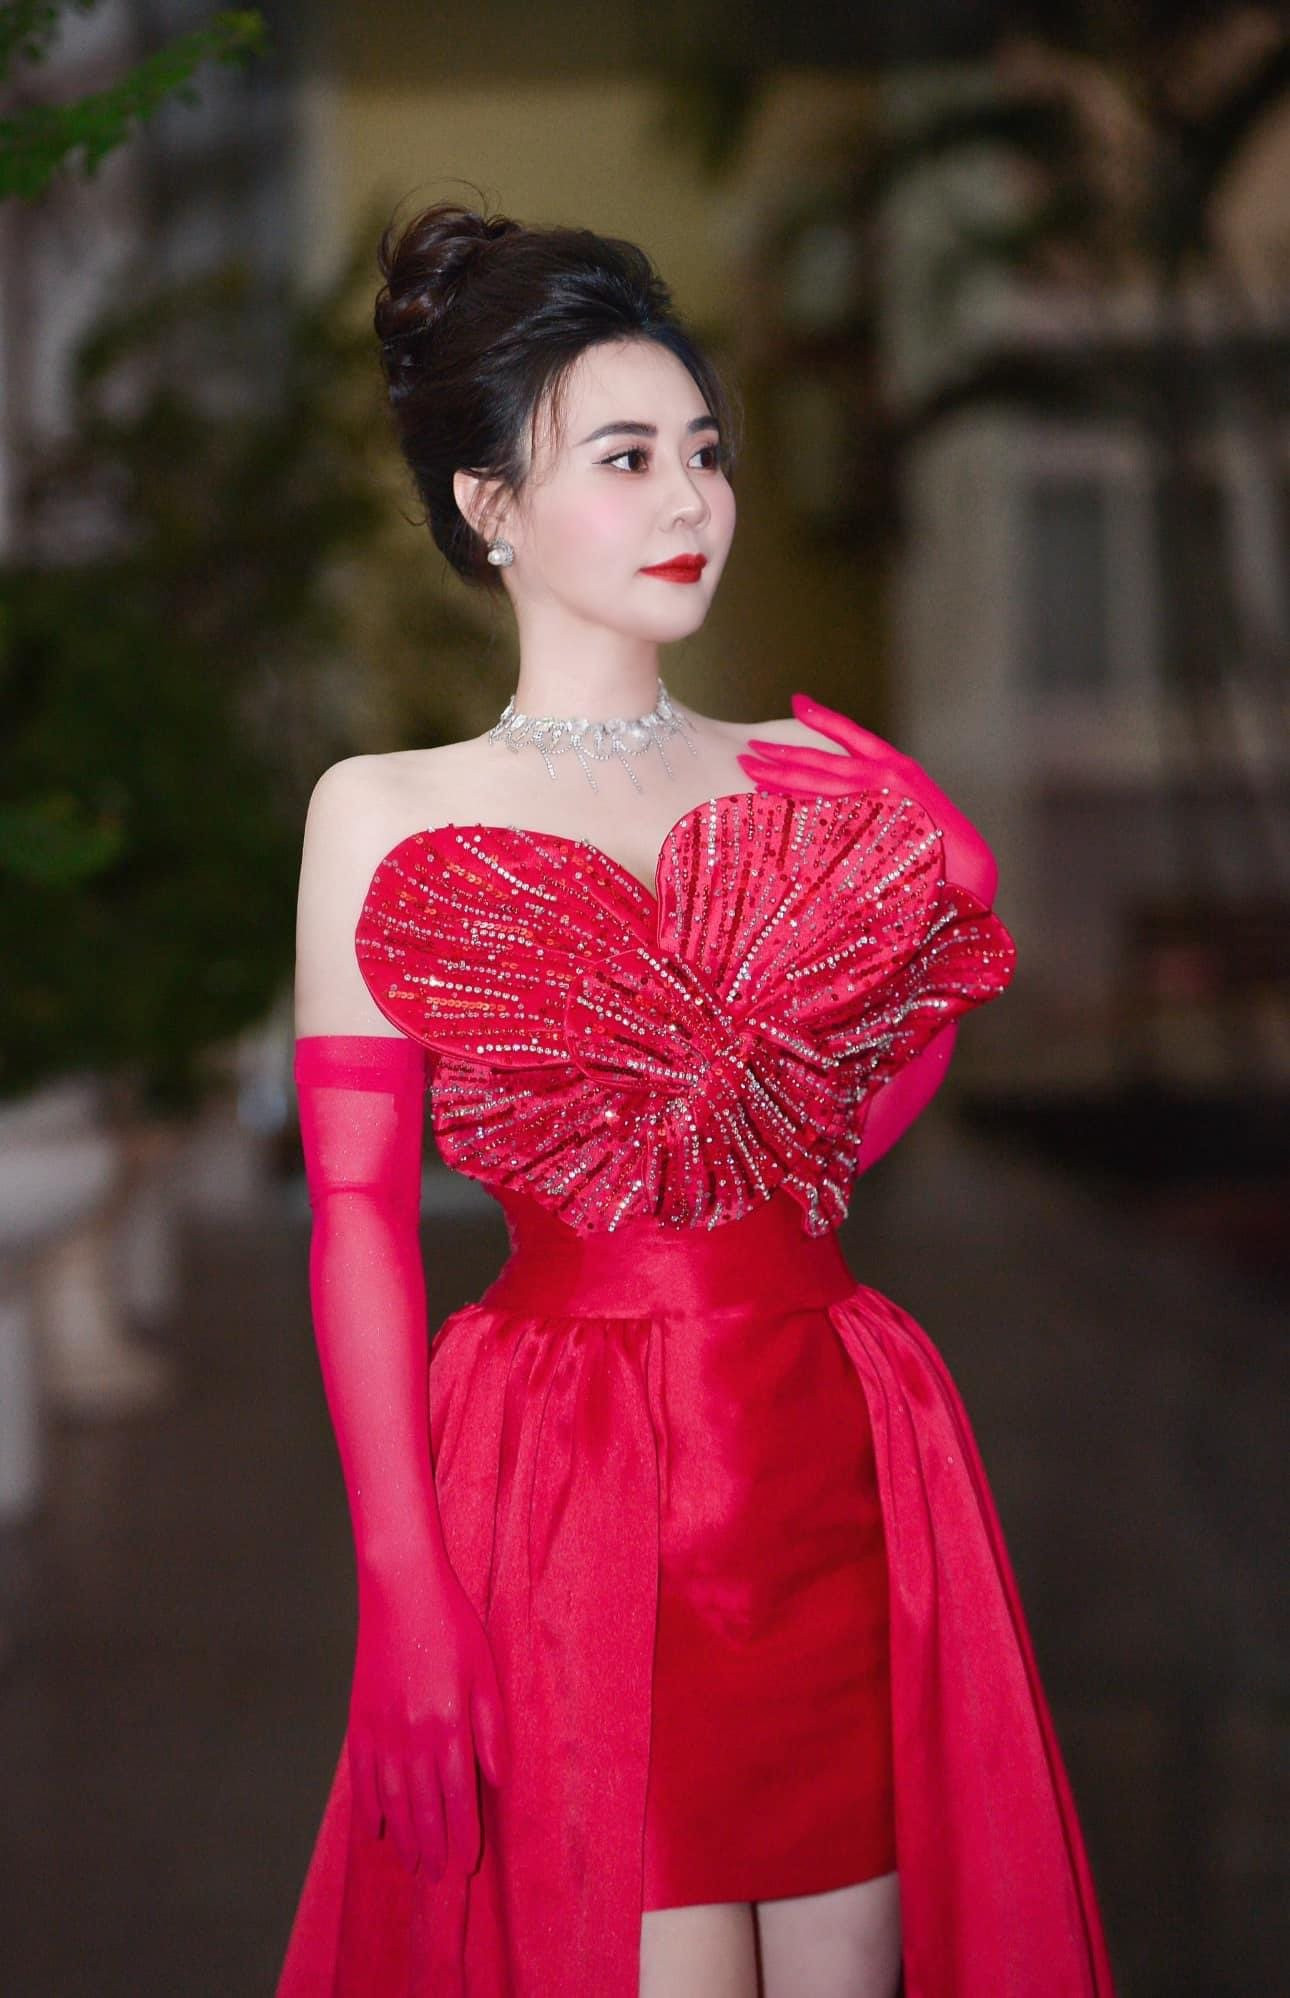 Hoa hậu Phan Kim Oanh khoe vẻ tươi tắn trong bộ ảnh Tết